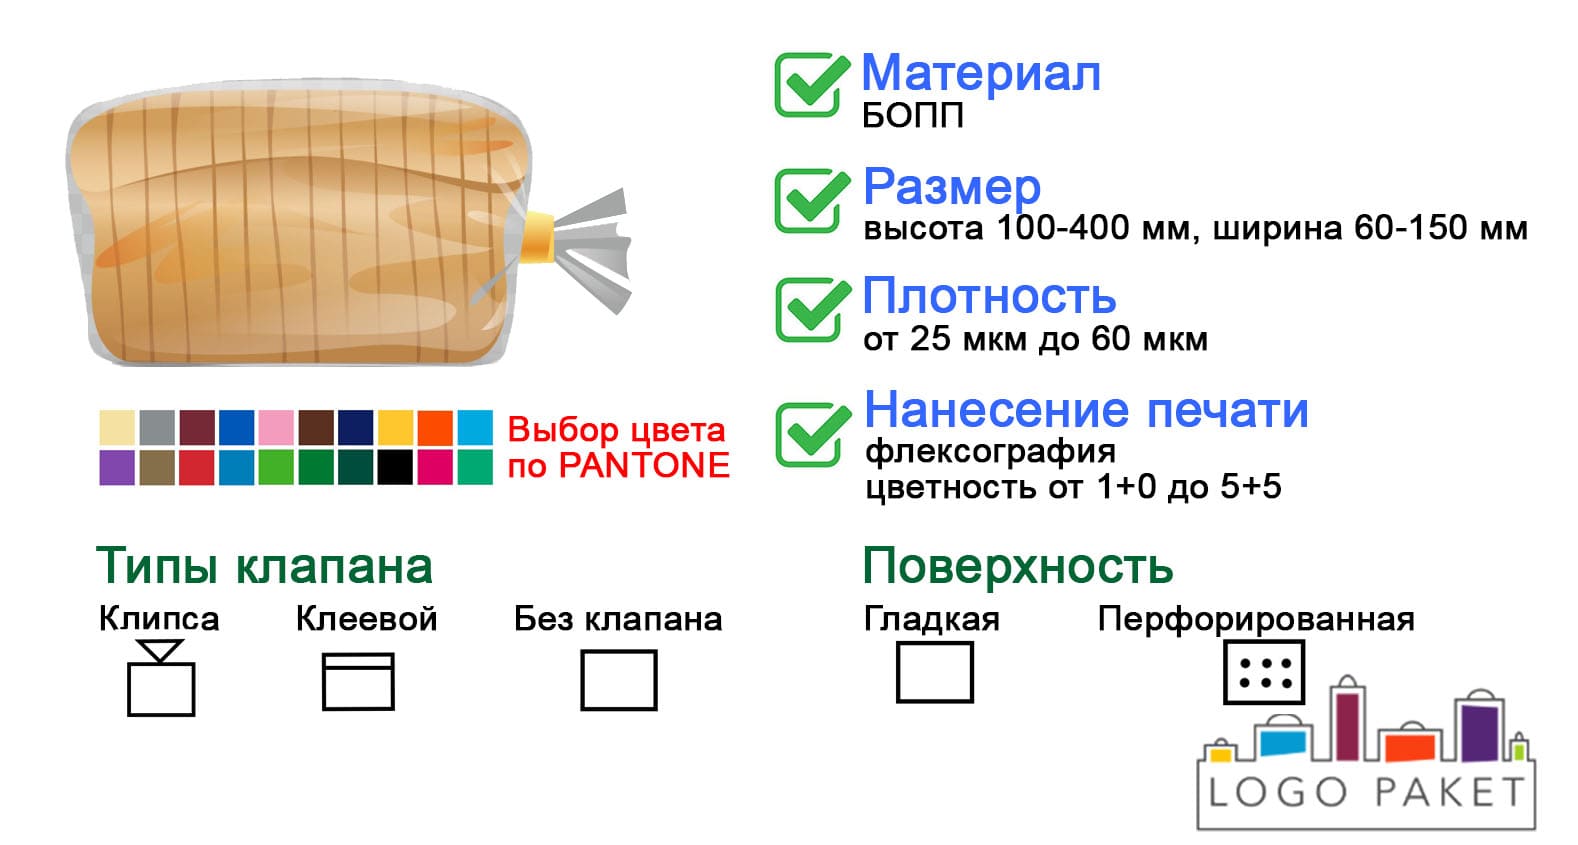 БОПП пакет для хлеба инфографика